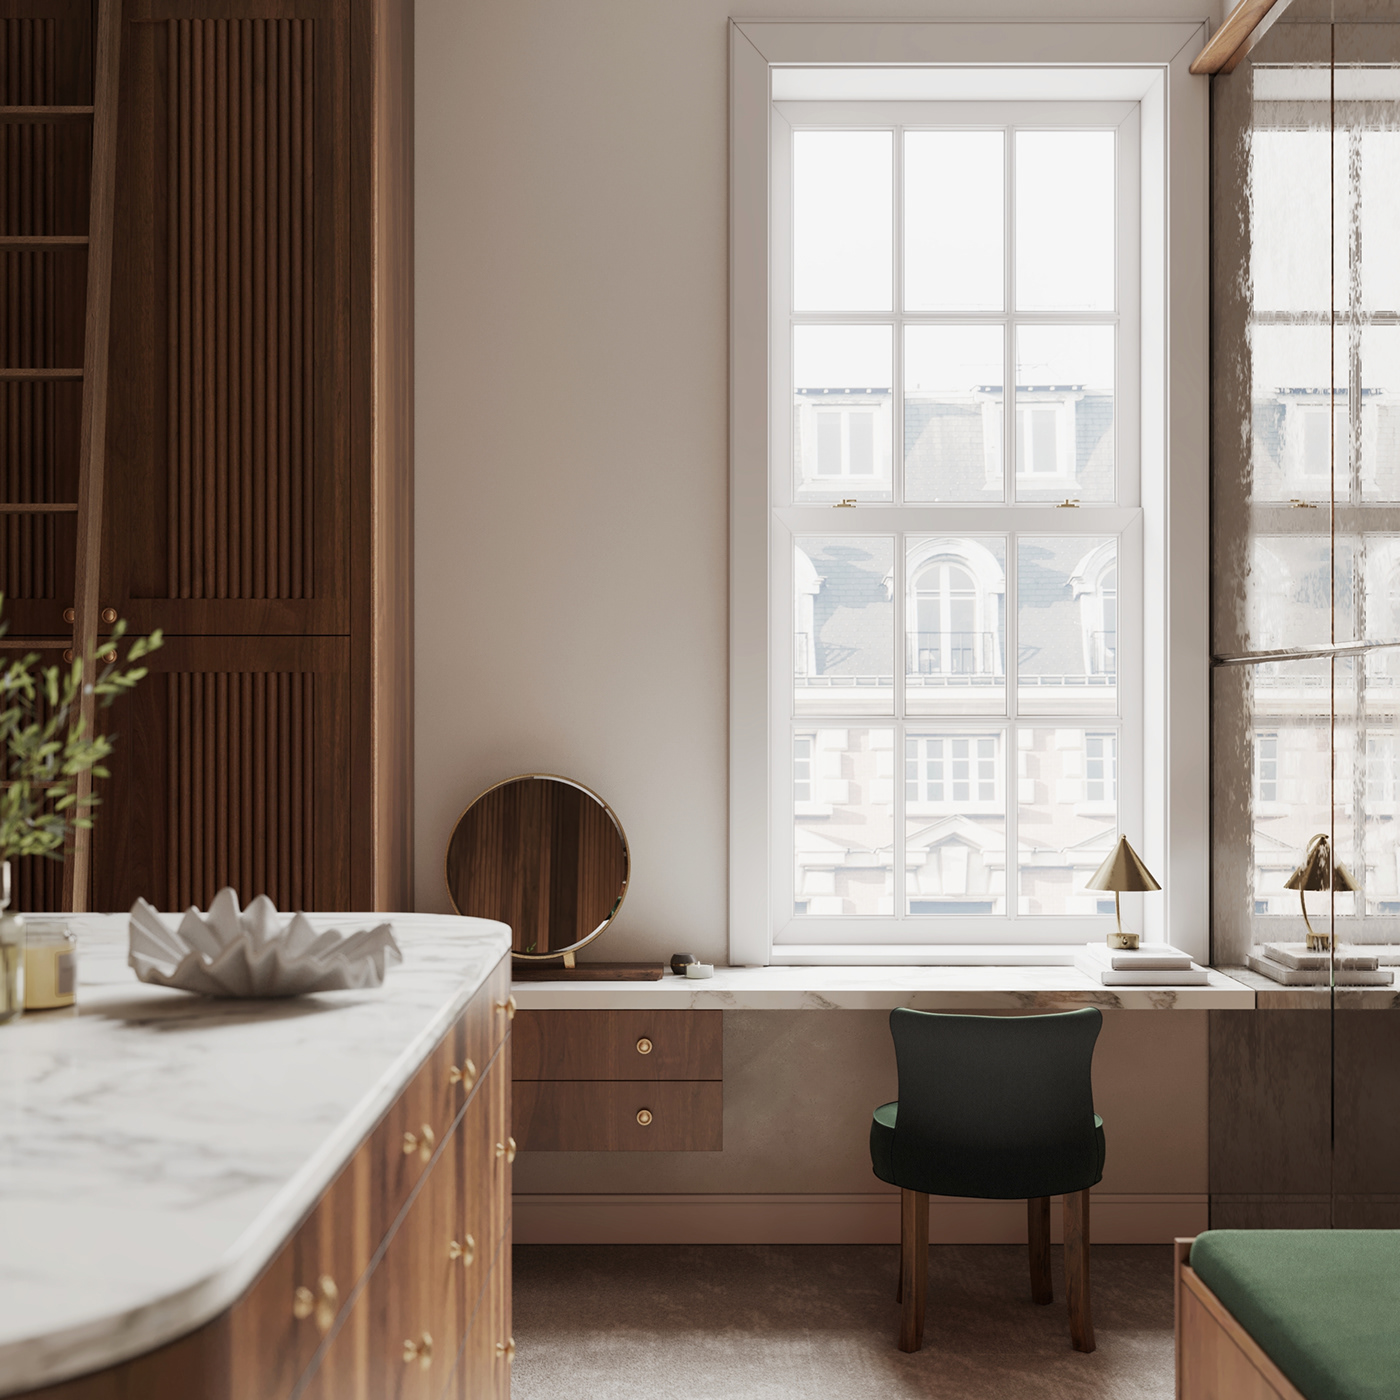 cabinetry woodworking walnut Interior Render visualization interior design  CGI archviz 3D